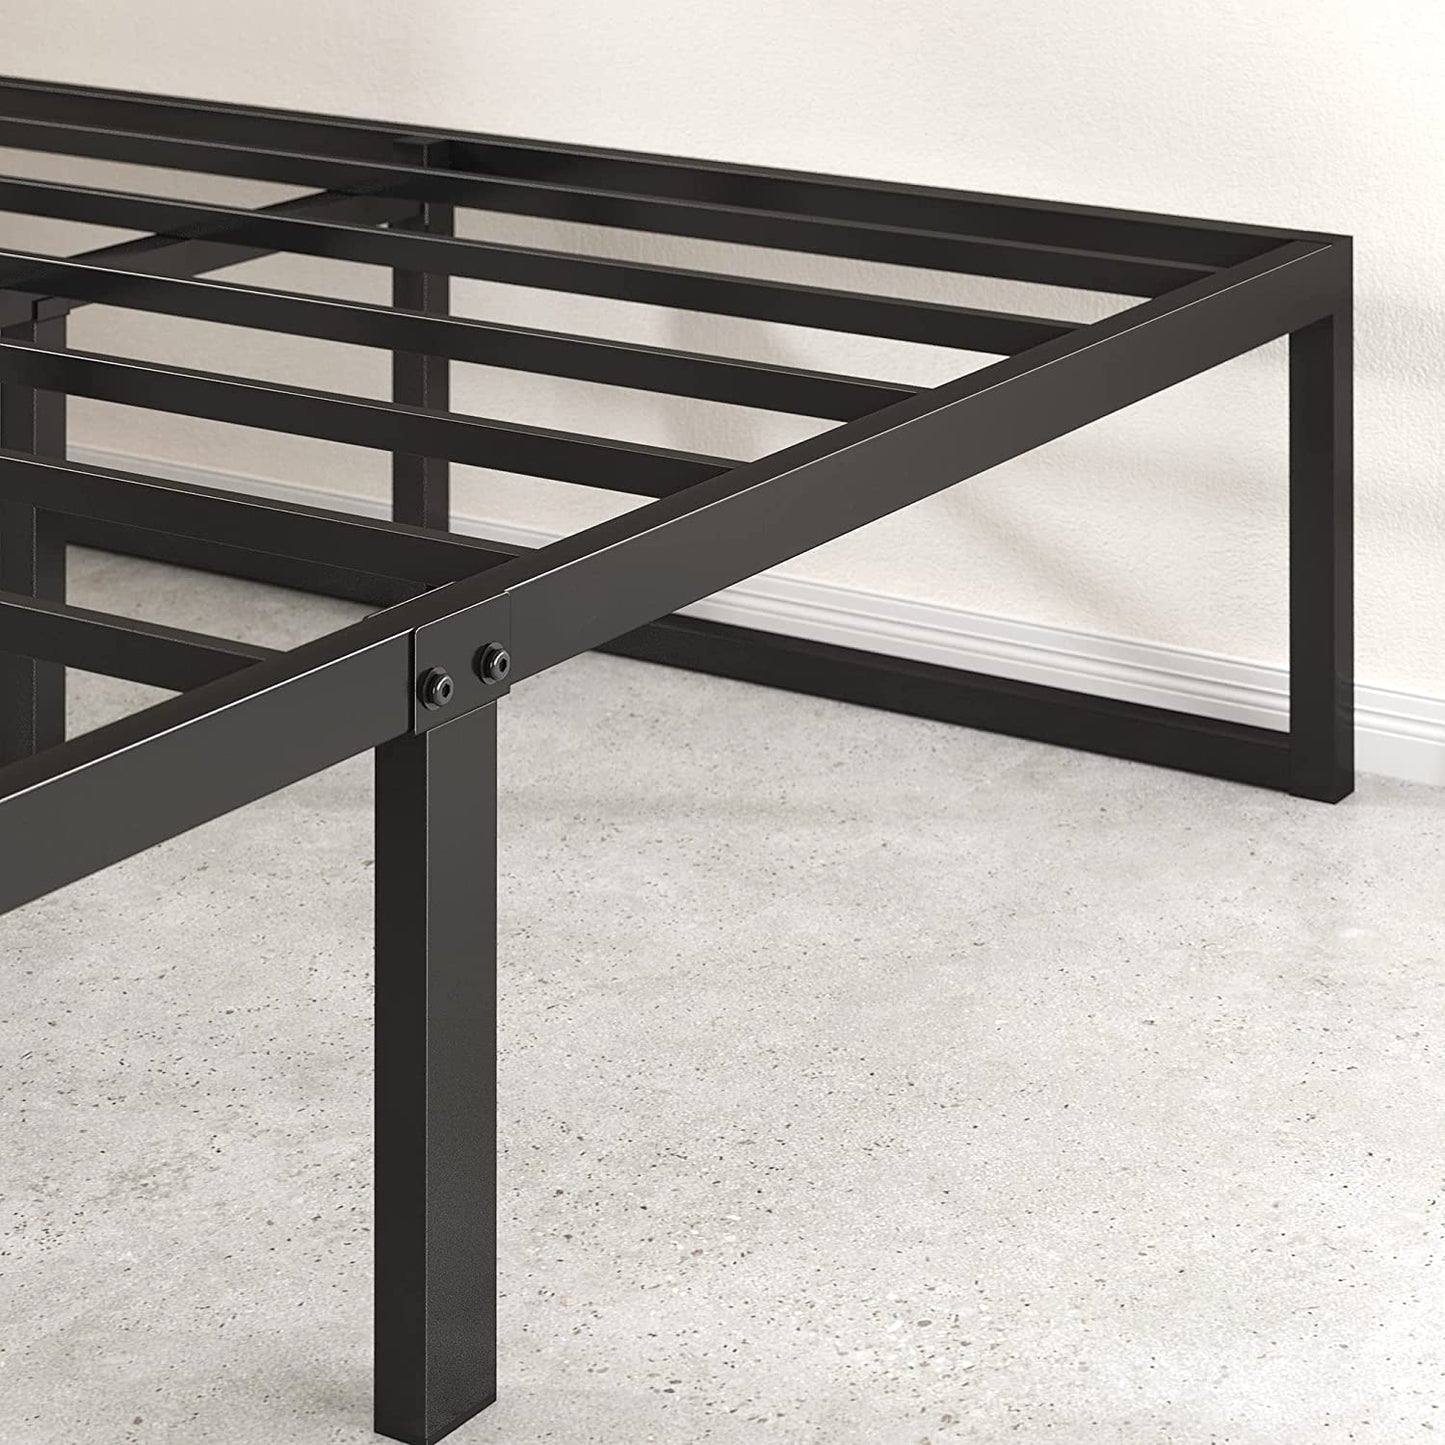 Lorelai 36 Cm Metal Platform Bed Frame | Steel Slat Support | Underbed Storage Space | Easy Assembly | King | Black